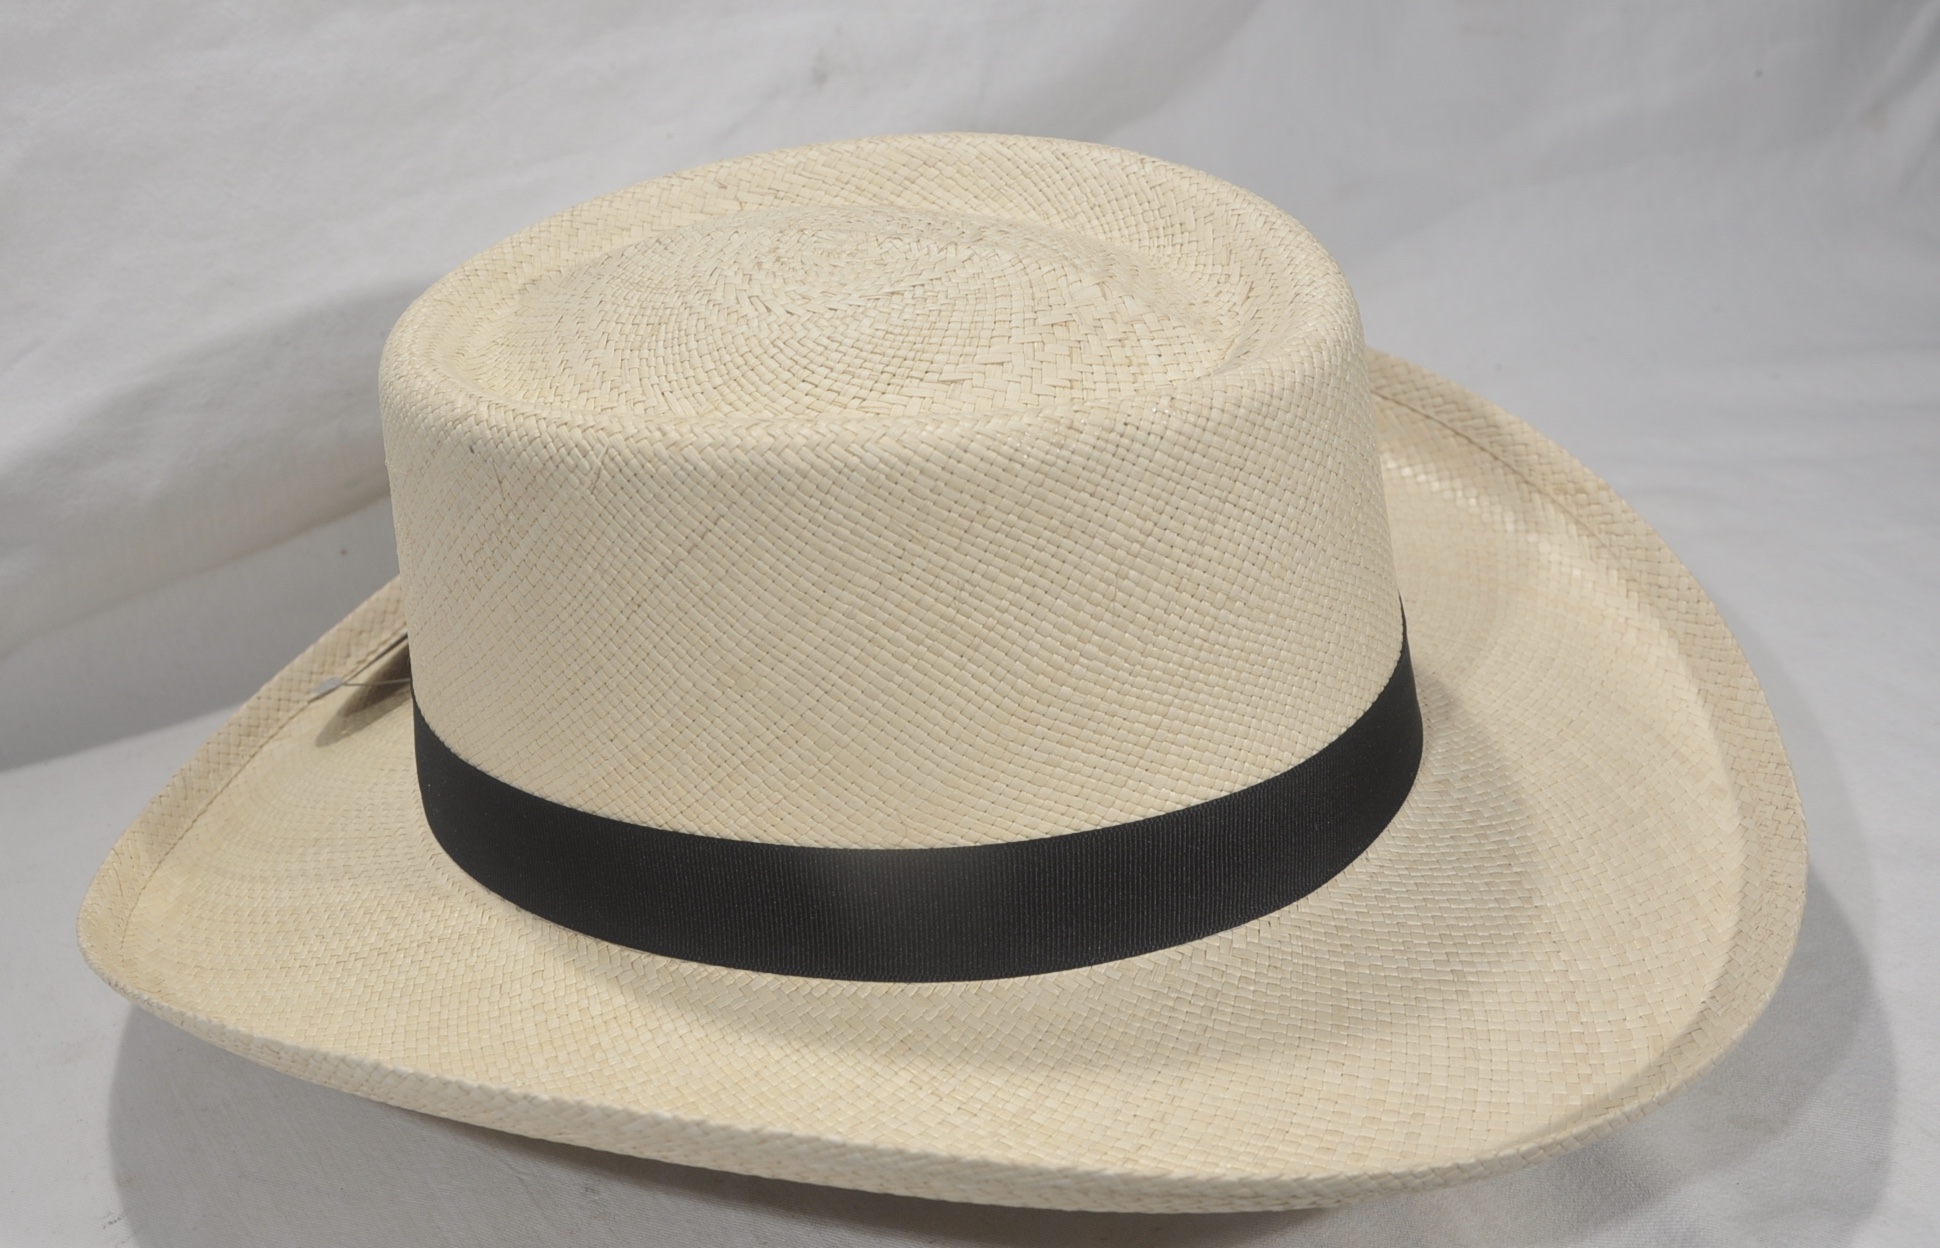 Blog - Panama Hats for your Guayabera | The Guayabera Shirt Store